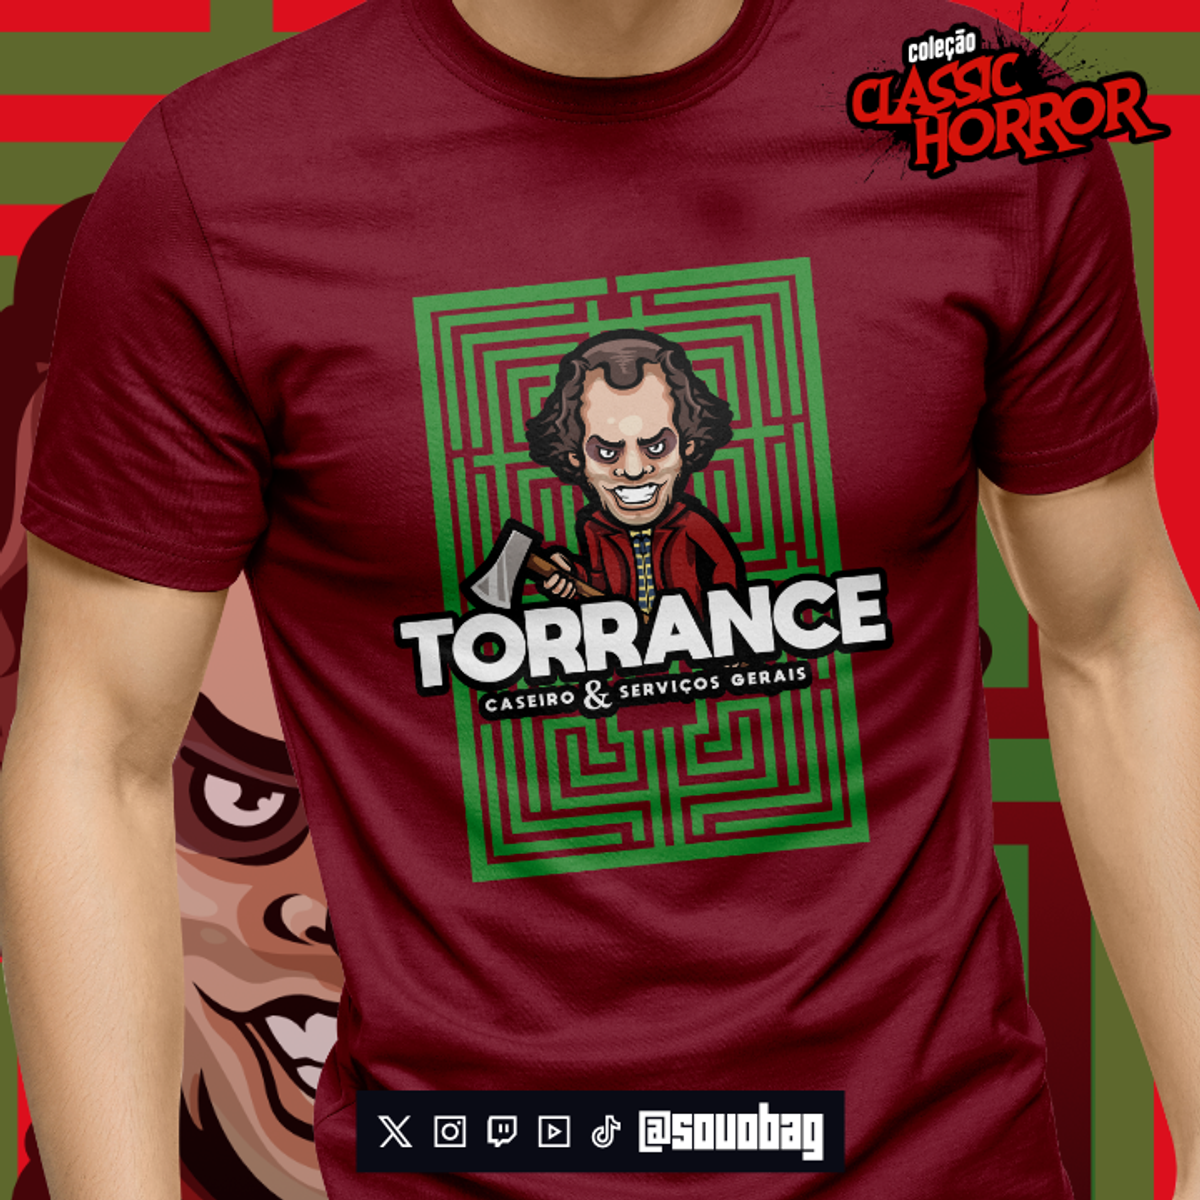 Nome do produto: Camiseta Torrance - Coleção Classic Horror